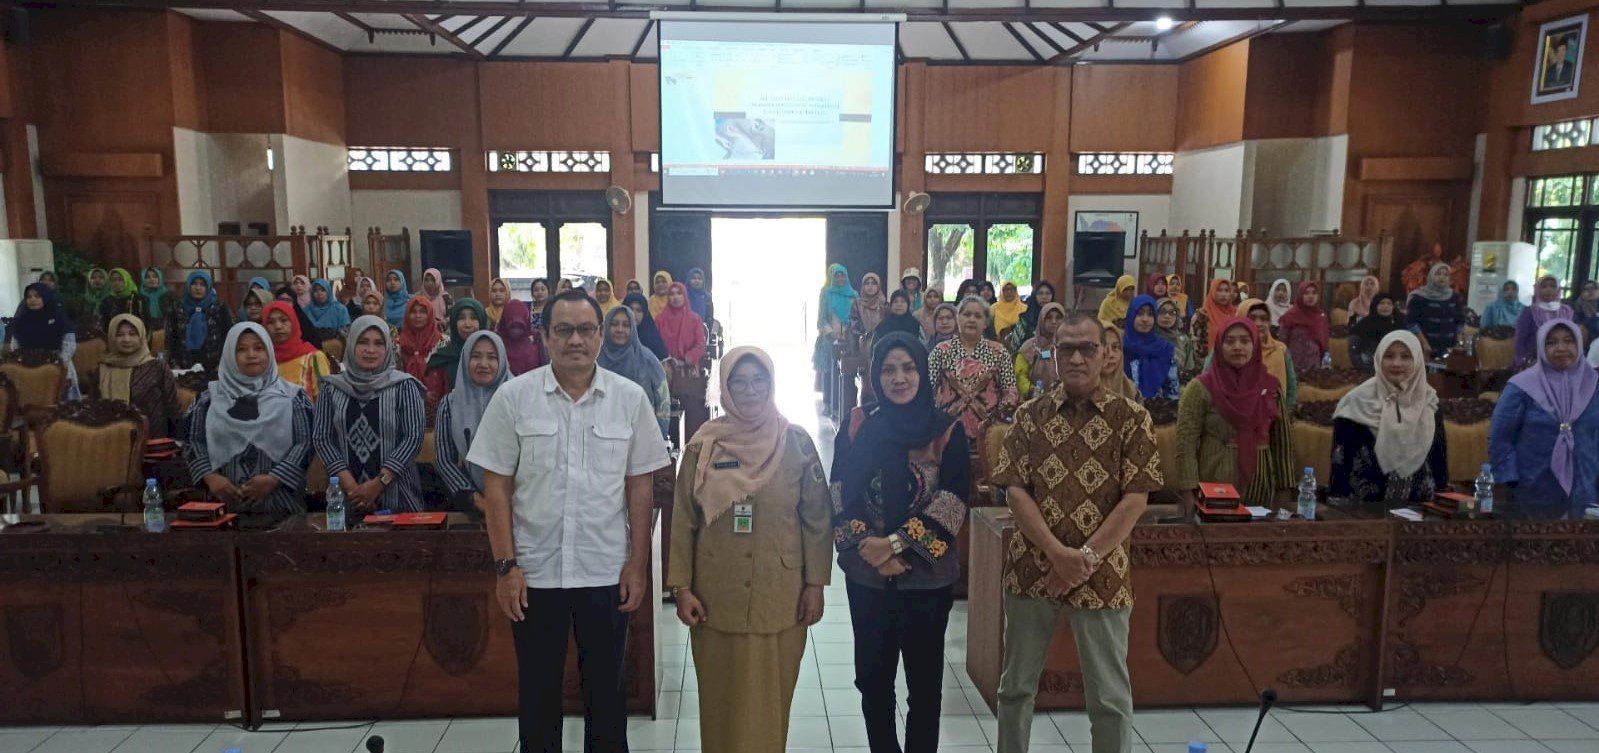 Workshop Penyakit Hipertensi bagi Kader Kesehatan di Wilayah Kabupaten Klaten